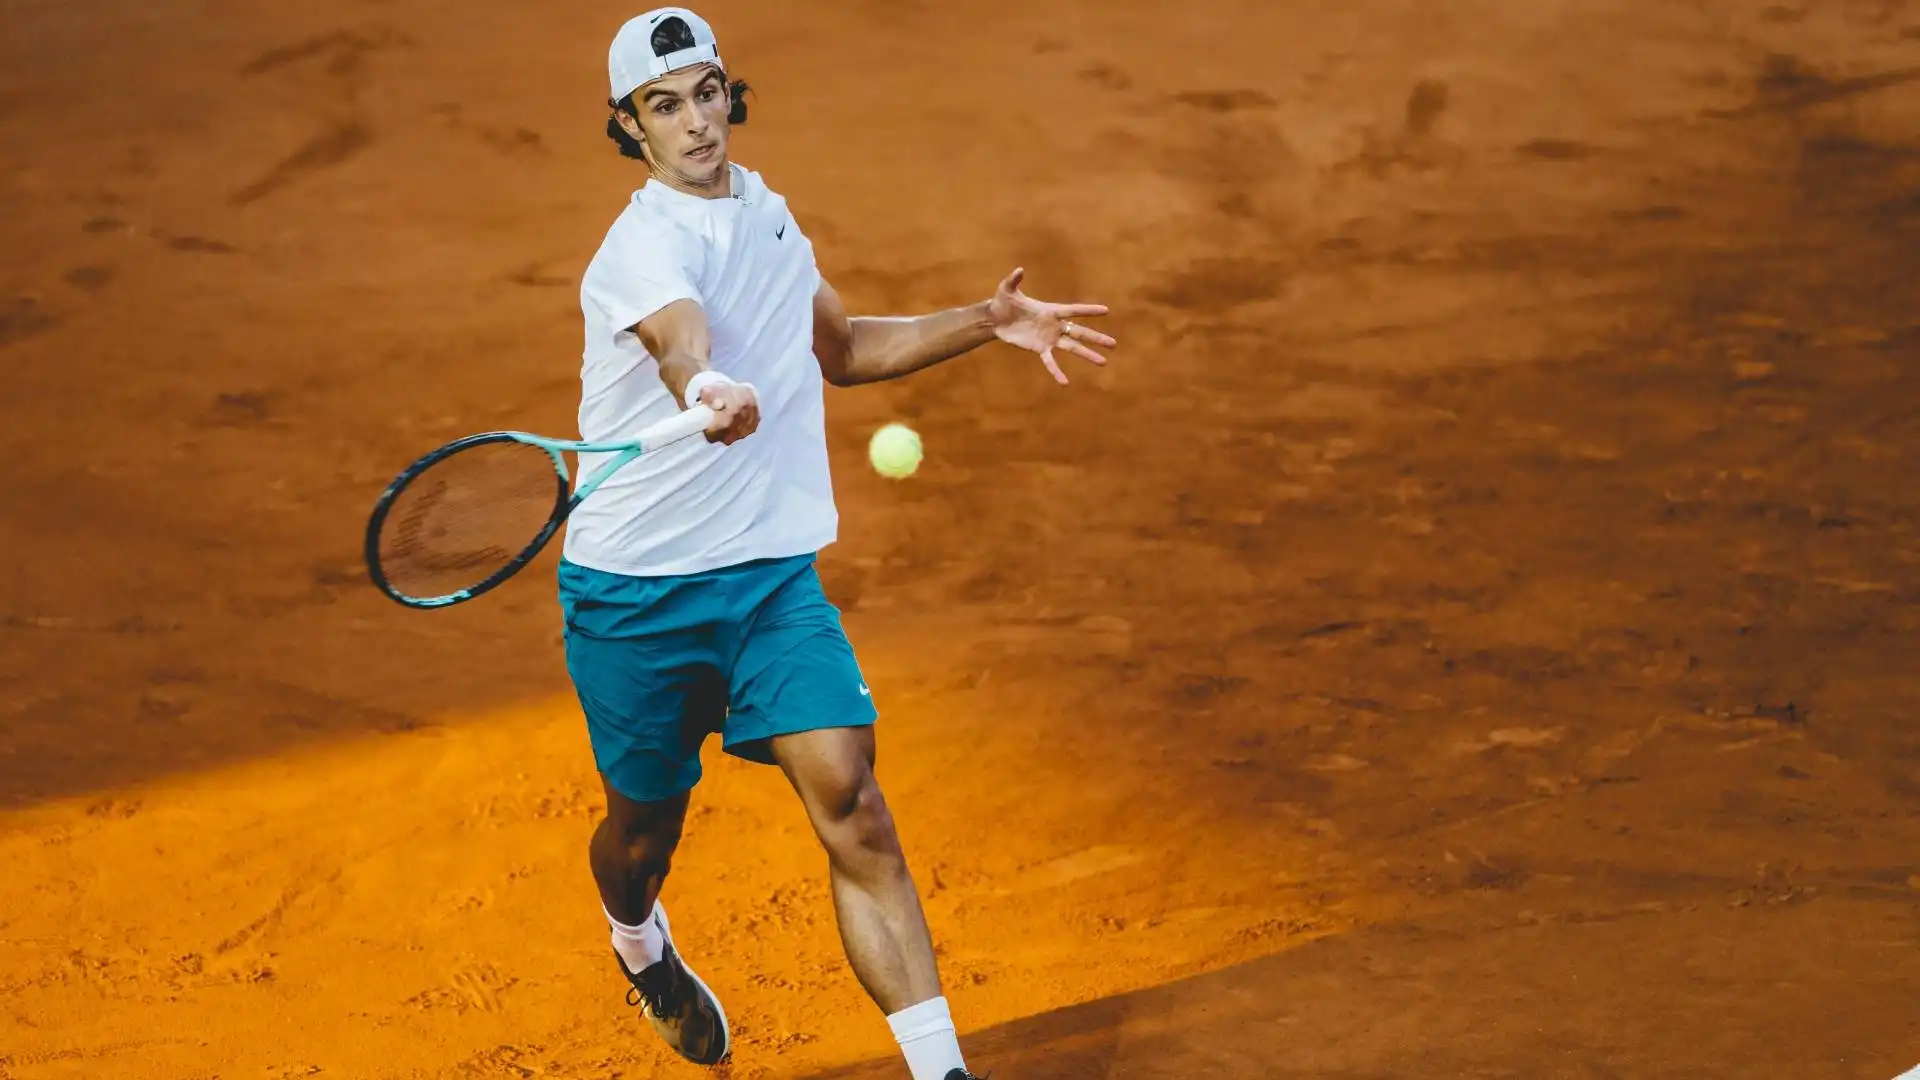 Lorenzo non è nuovo a colpi del genere: il suo tennis è ricco di variazioni e colpi spettacolari